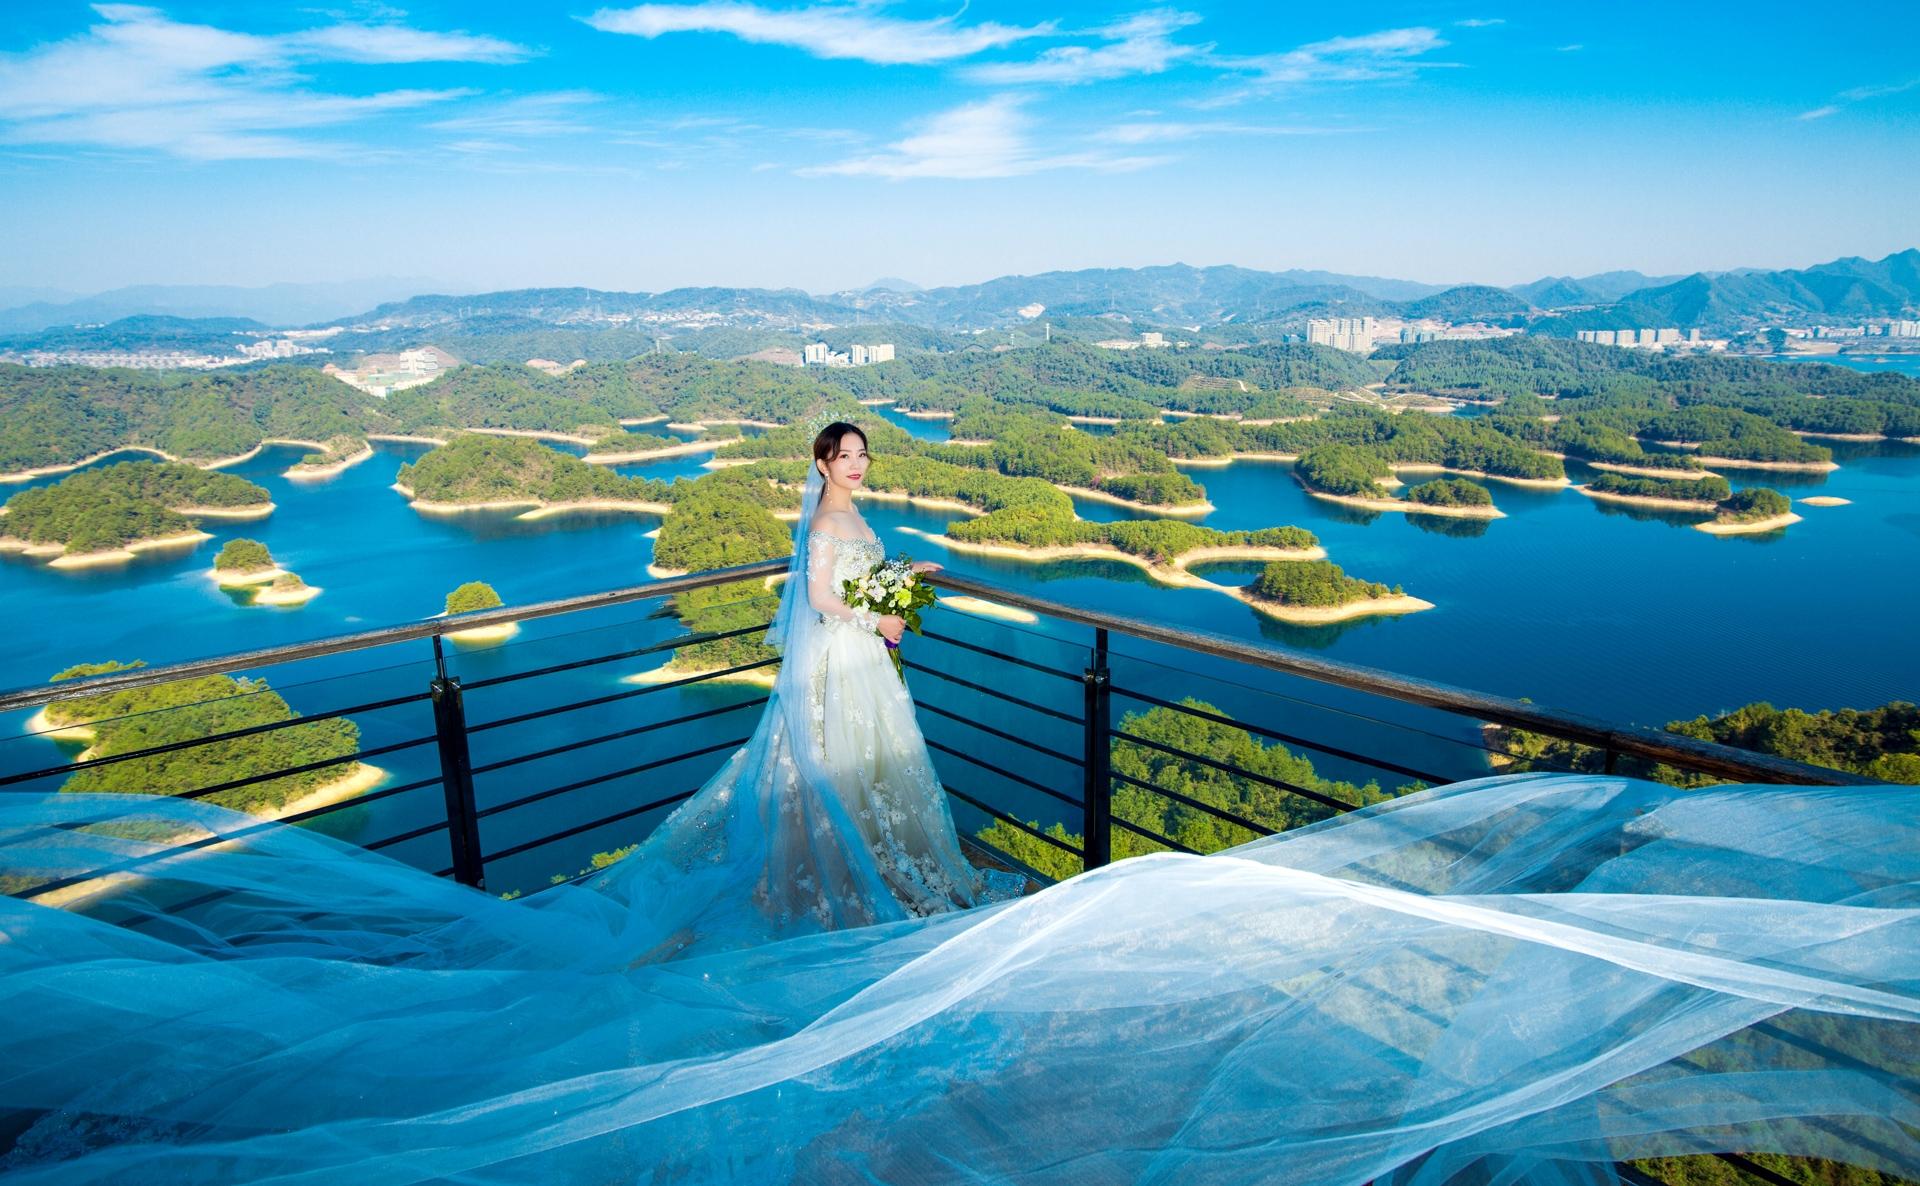 超养眼!杭州哪里拍婚纱照最好看?千岛湖的风景婚纱照风格随便拍